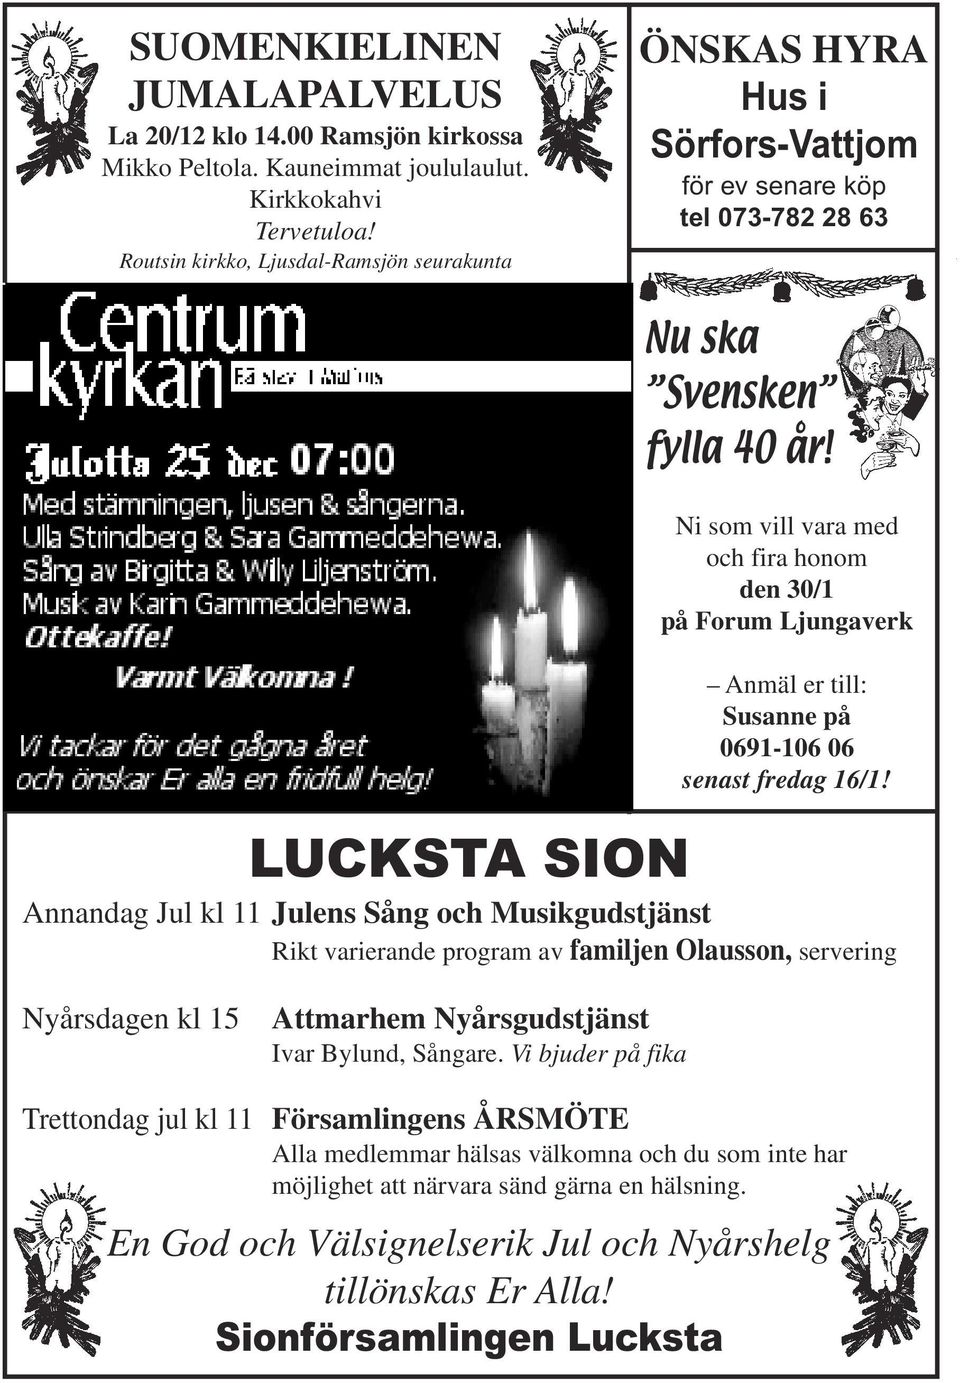 Ni som vill vara med och fira honom den 30/1 på Forum Ljungaverk Anmäl er till: Susanne på 0691-106 06 senast fredag 16/1!